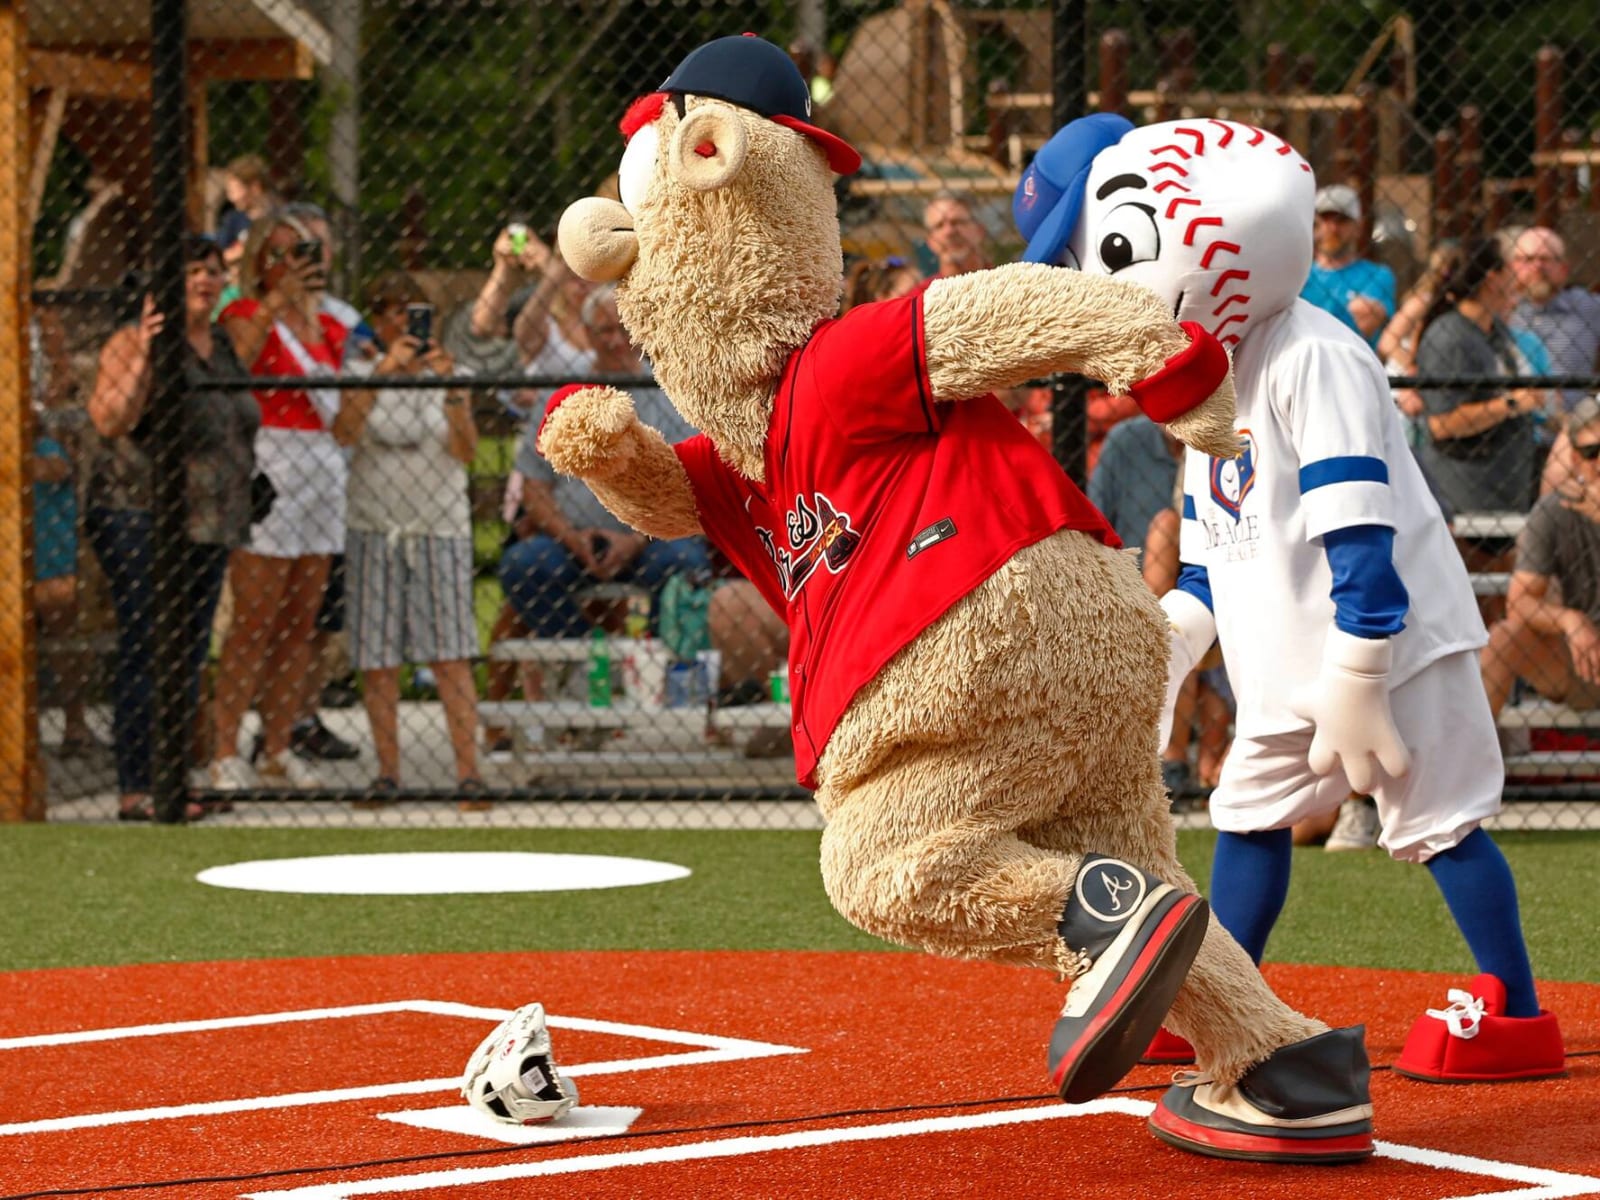 Braves mascot runs onto field, tackled during Diamondbacks game